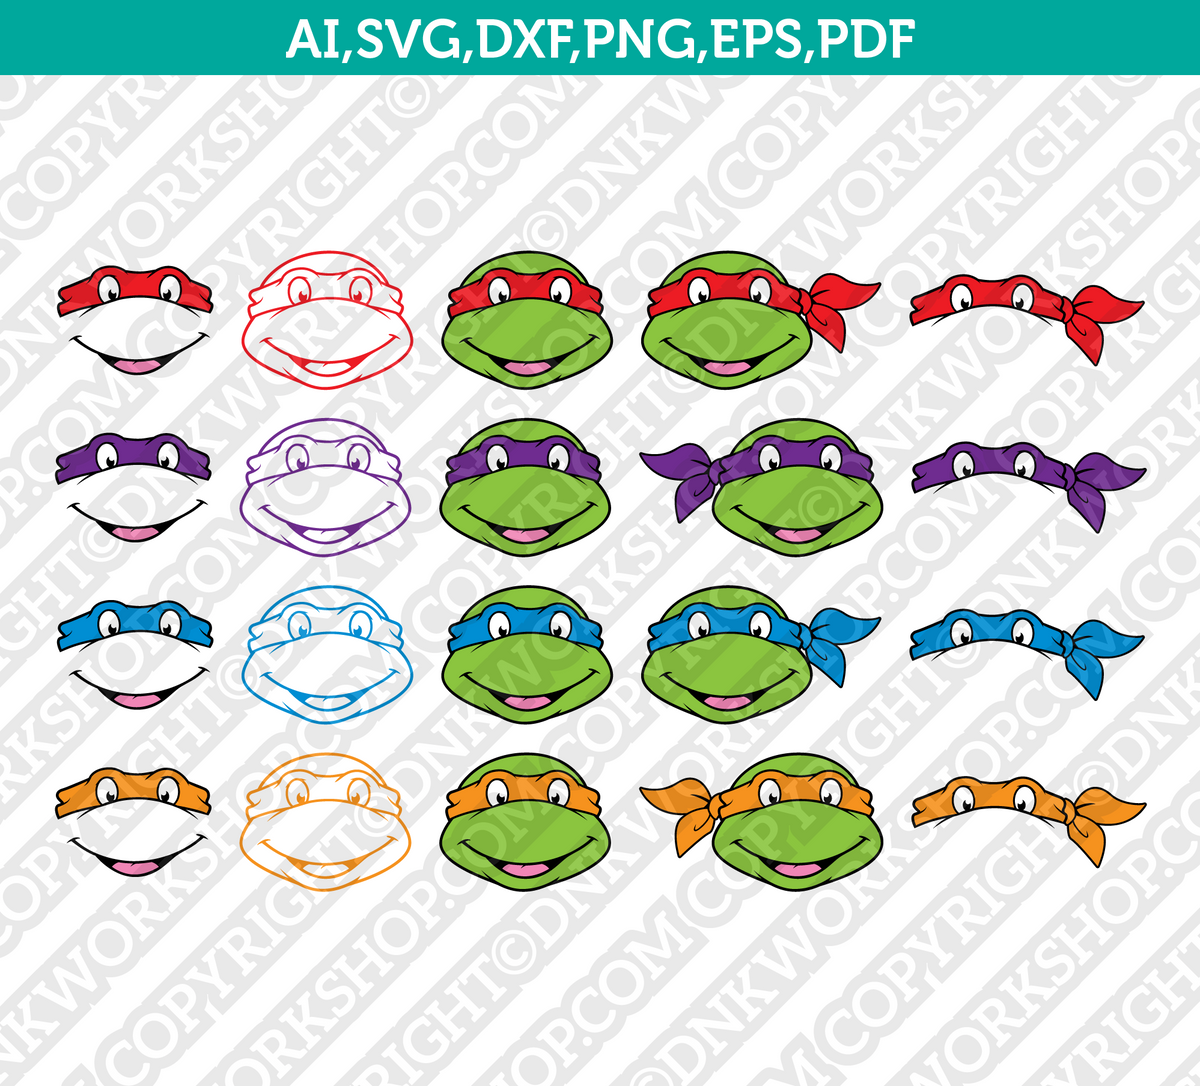 4 Ninja Turtle SVG Designs